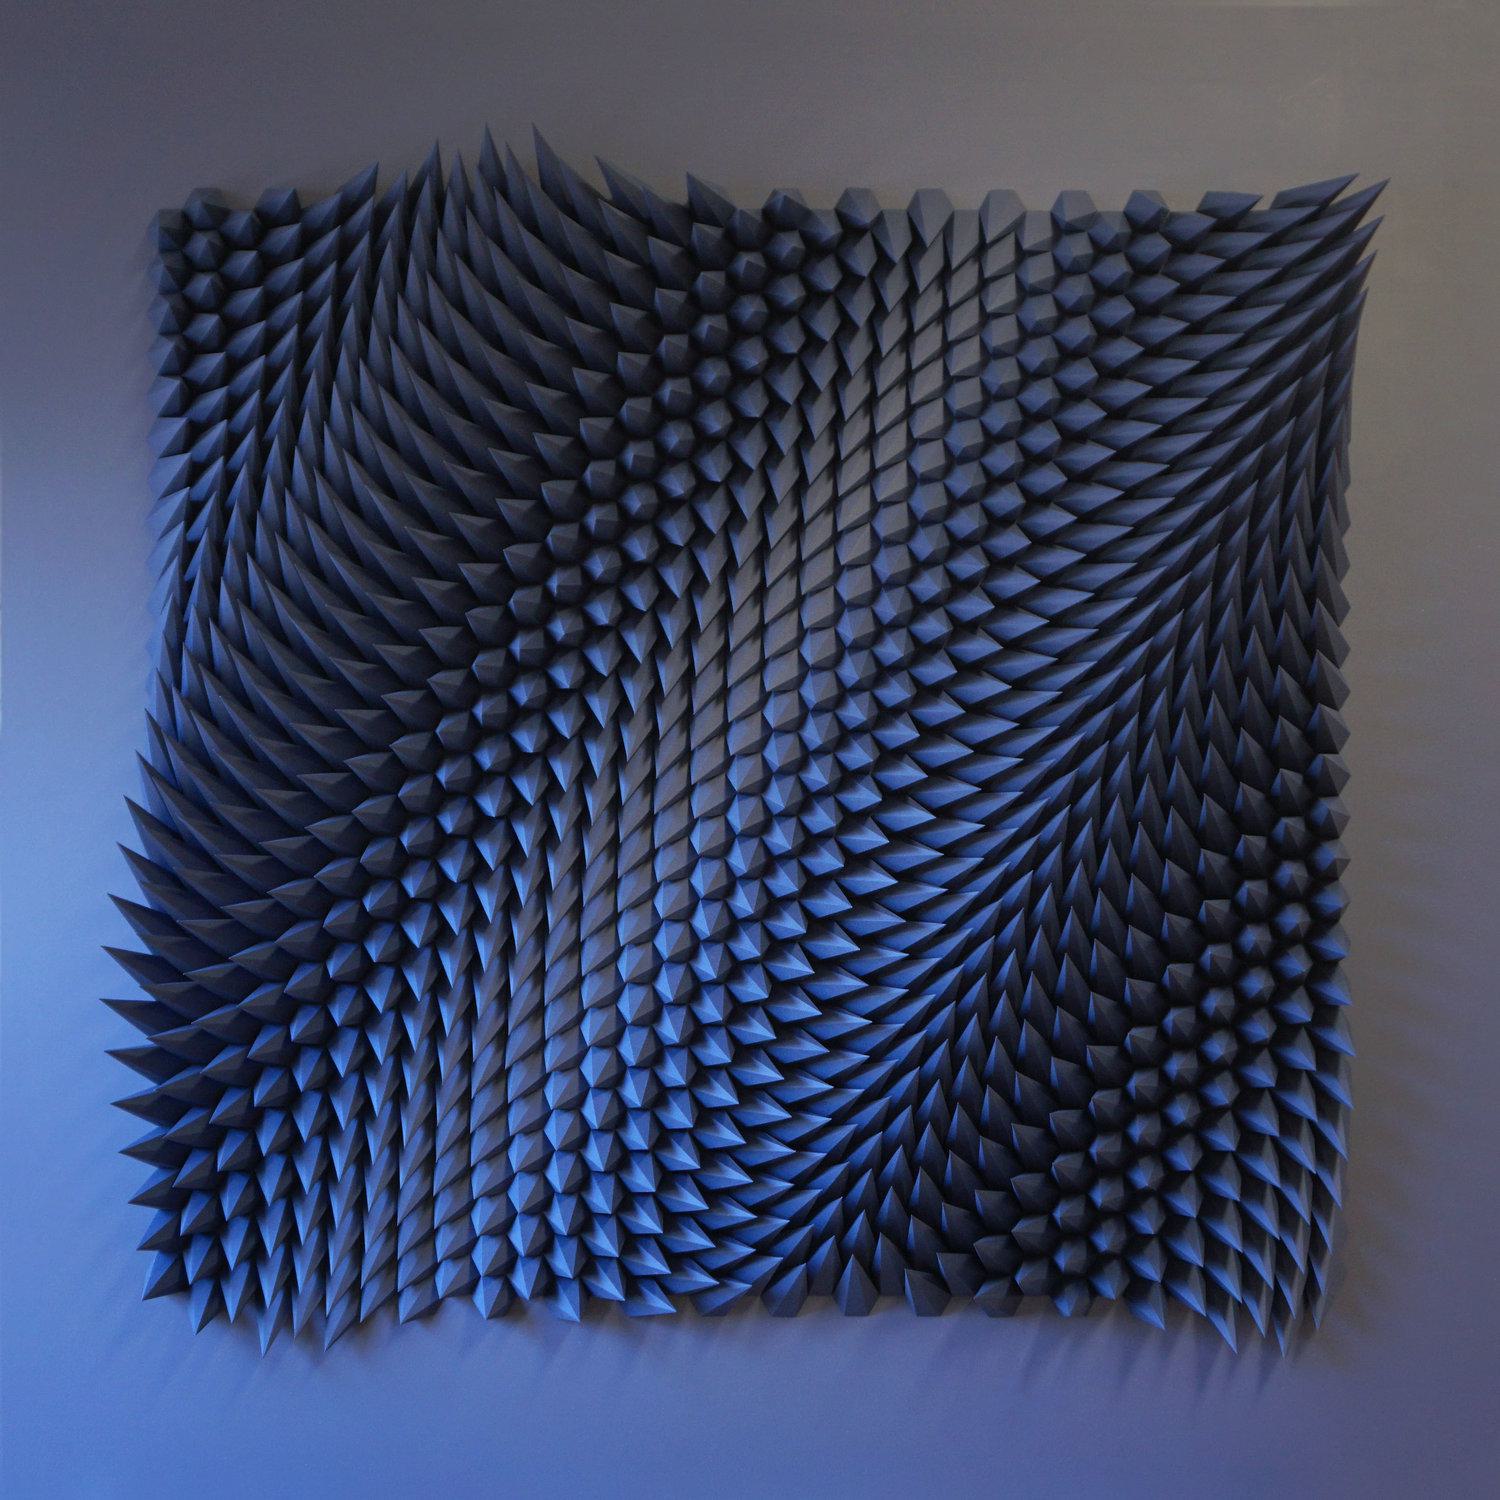 The Paper Sculptures of Matt Shlian